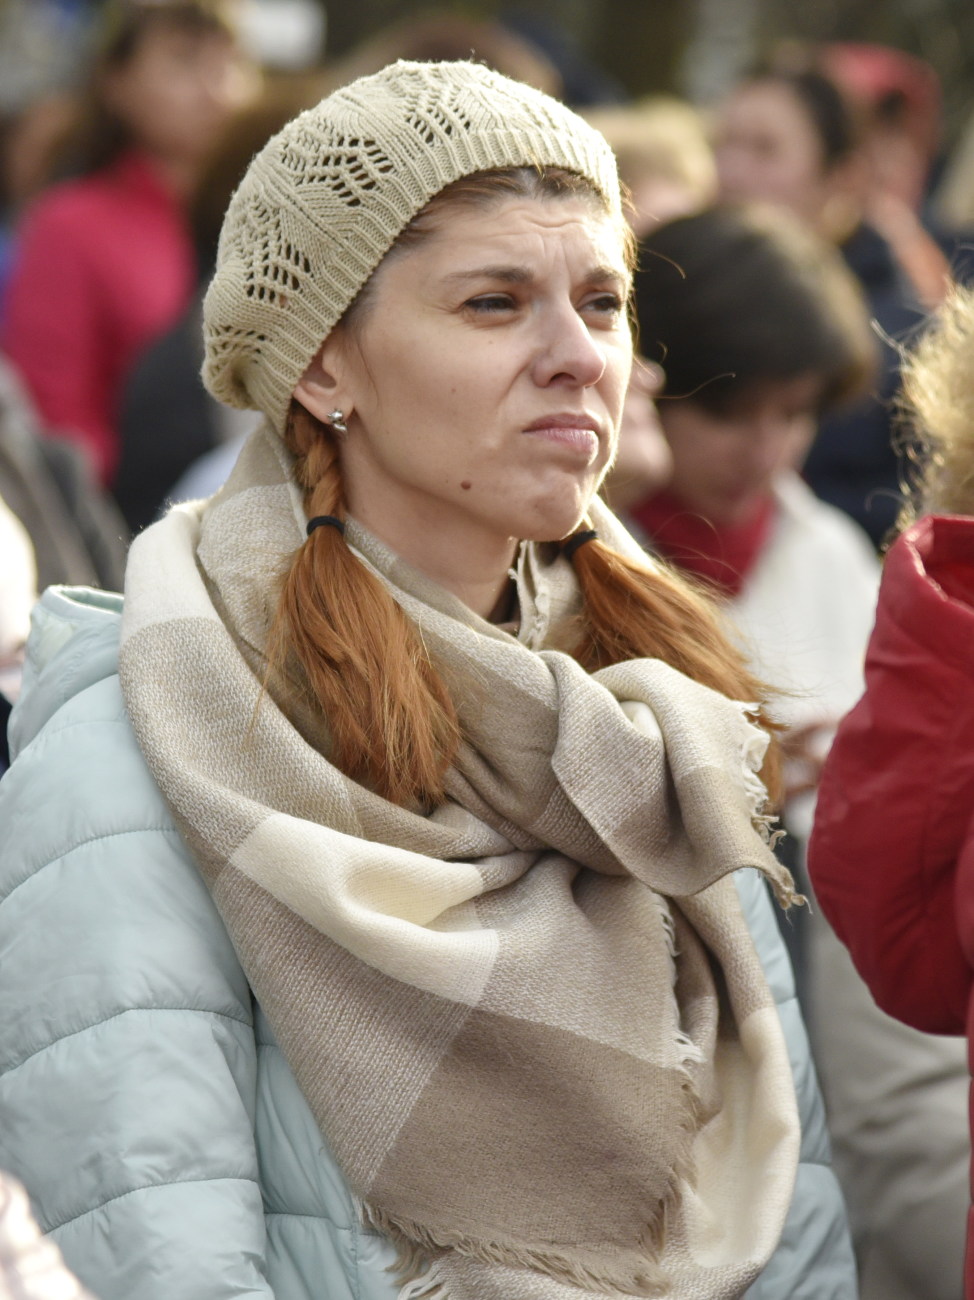 В Киеве митинговали учителя